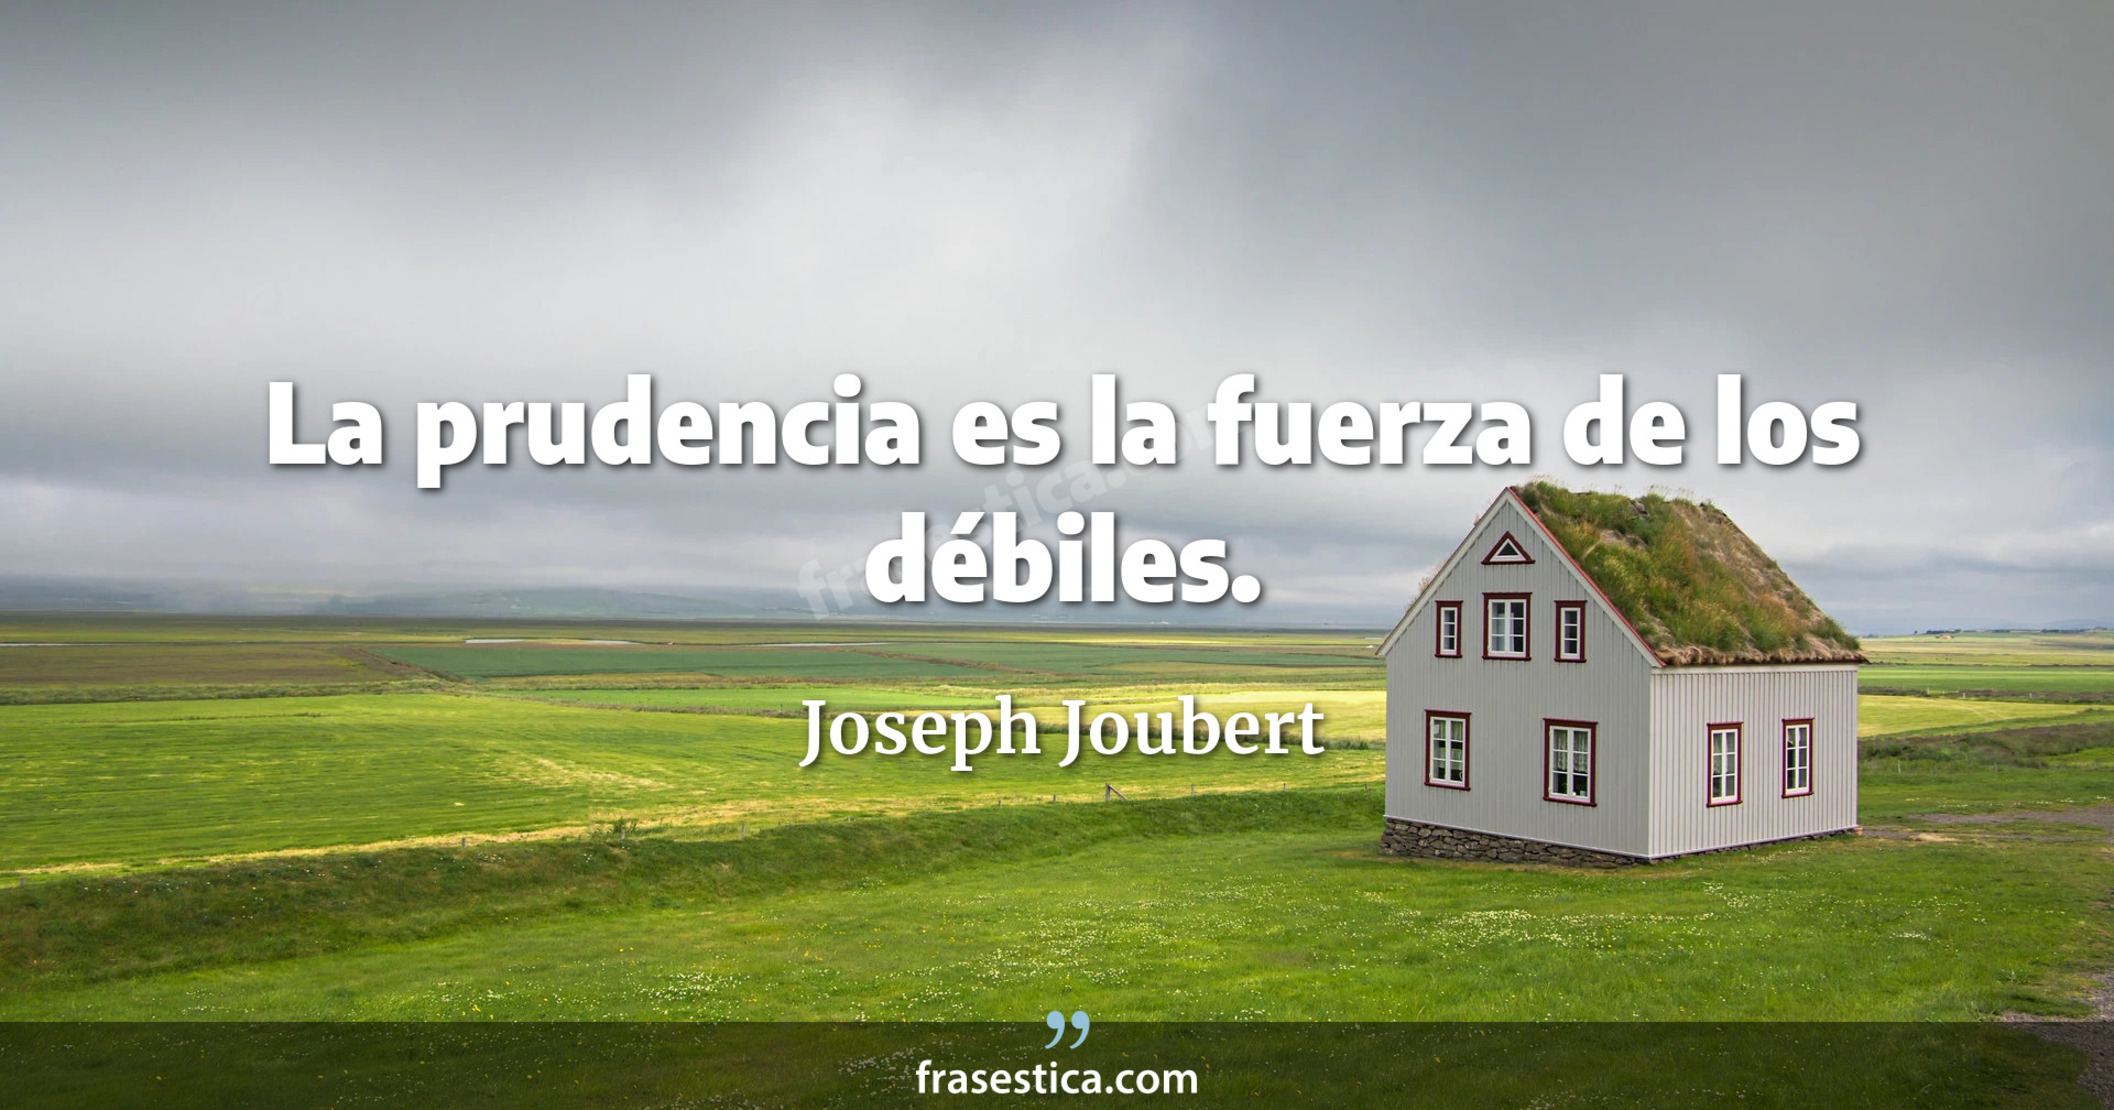 La prudencia es la fuerza de los débiles. - Joseph Joubert